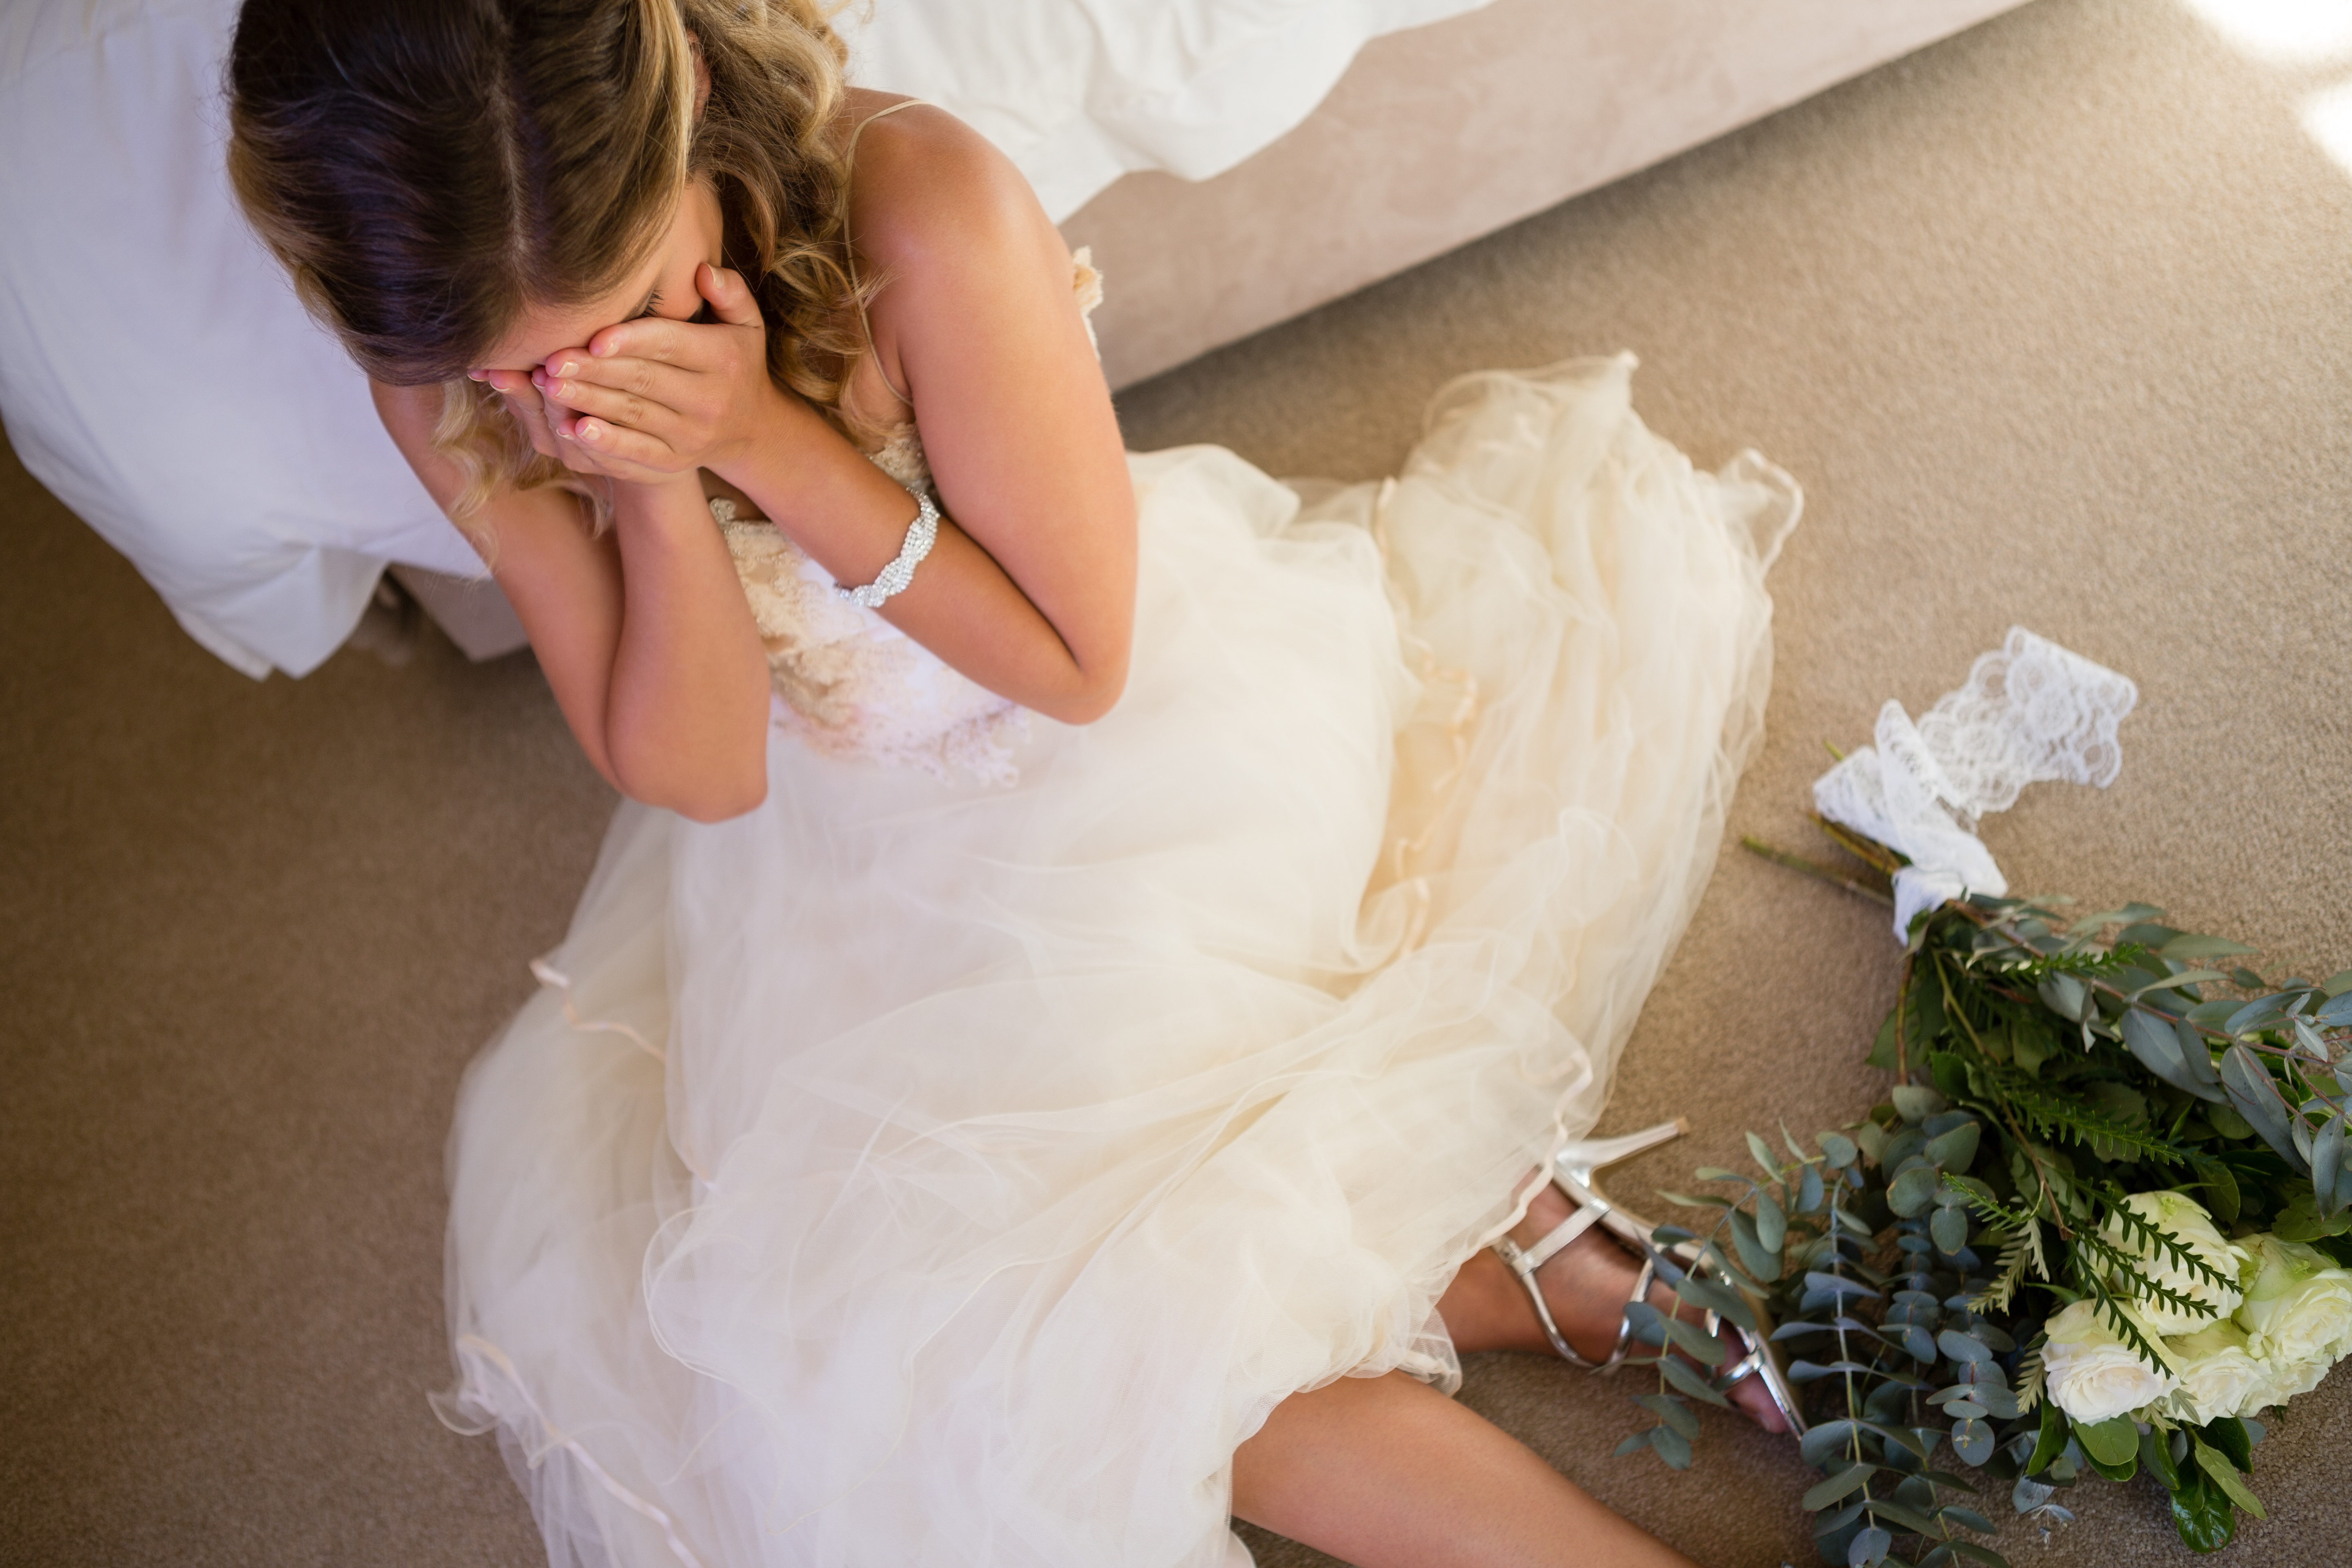 Eine weinende Frau an ihrem Hochzeitstag | Quelle: Shutterstock